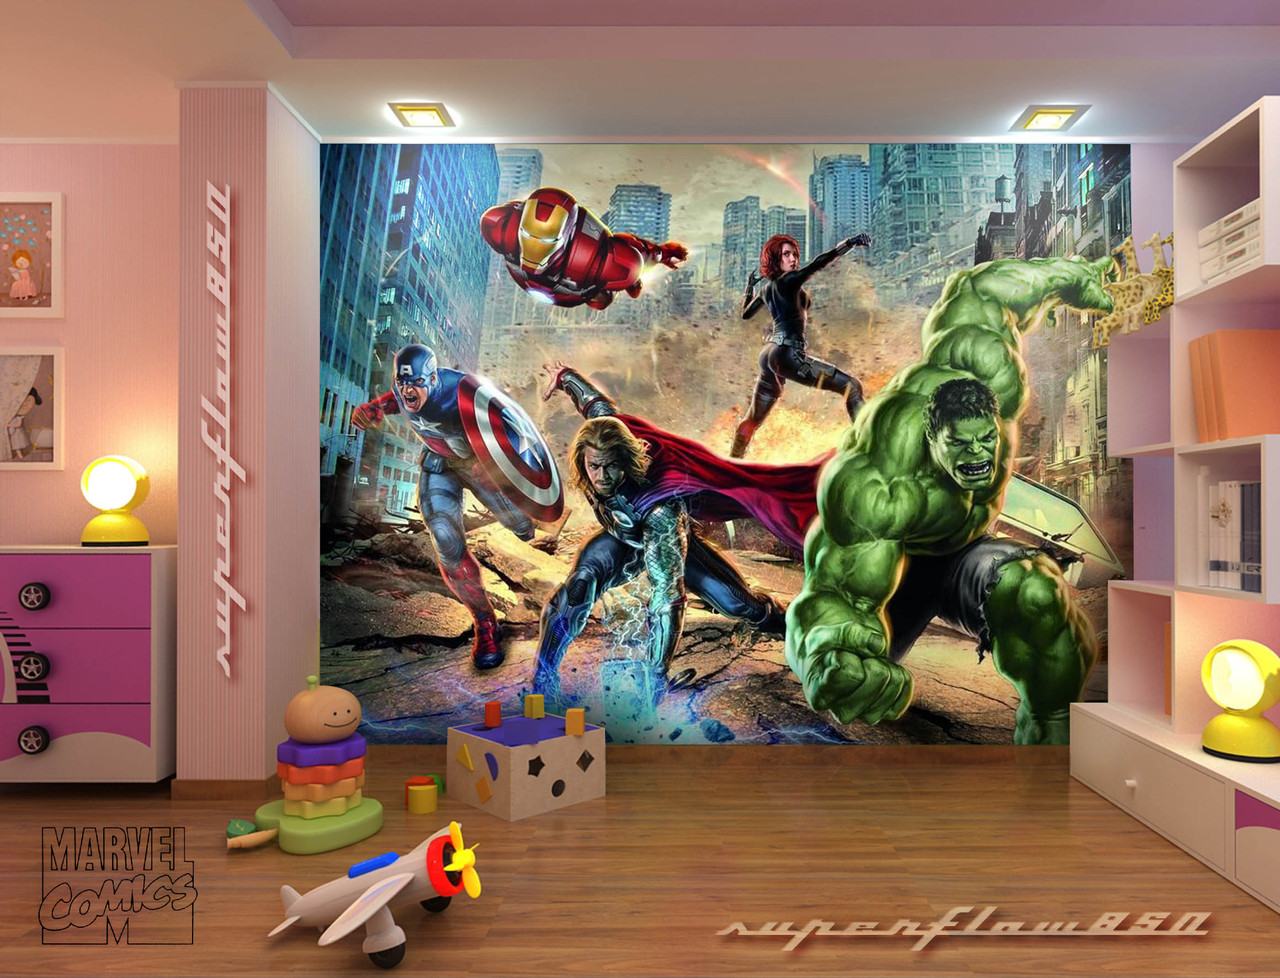 Marvel Ic Heroes Ics Wallpaper Mural Kids HD